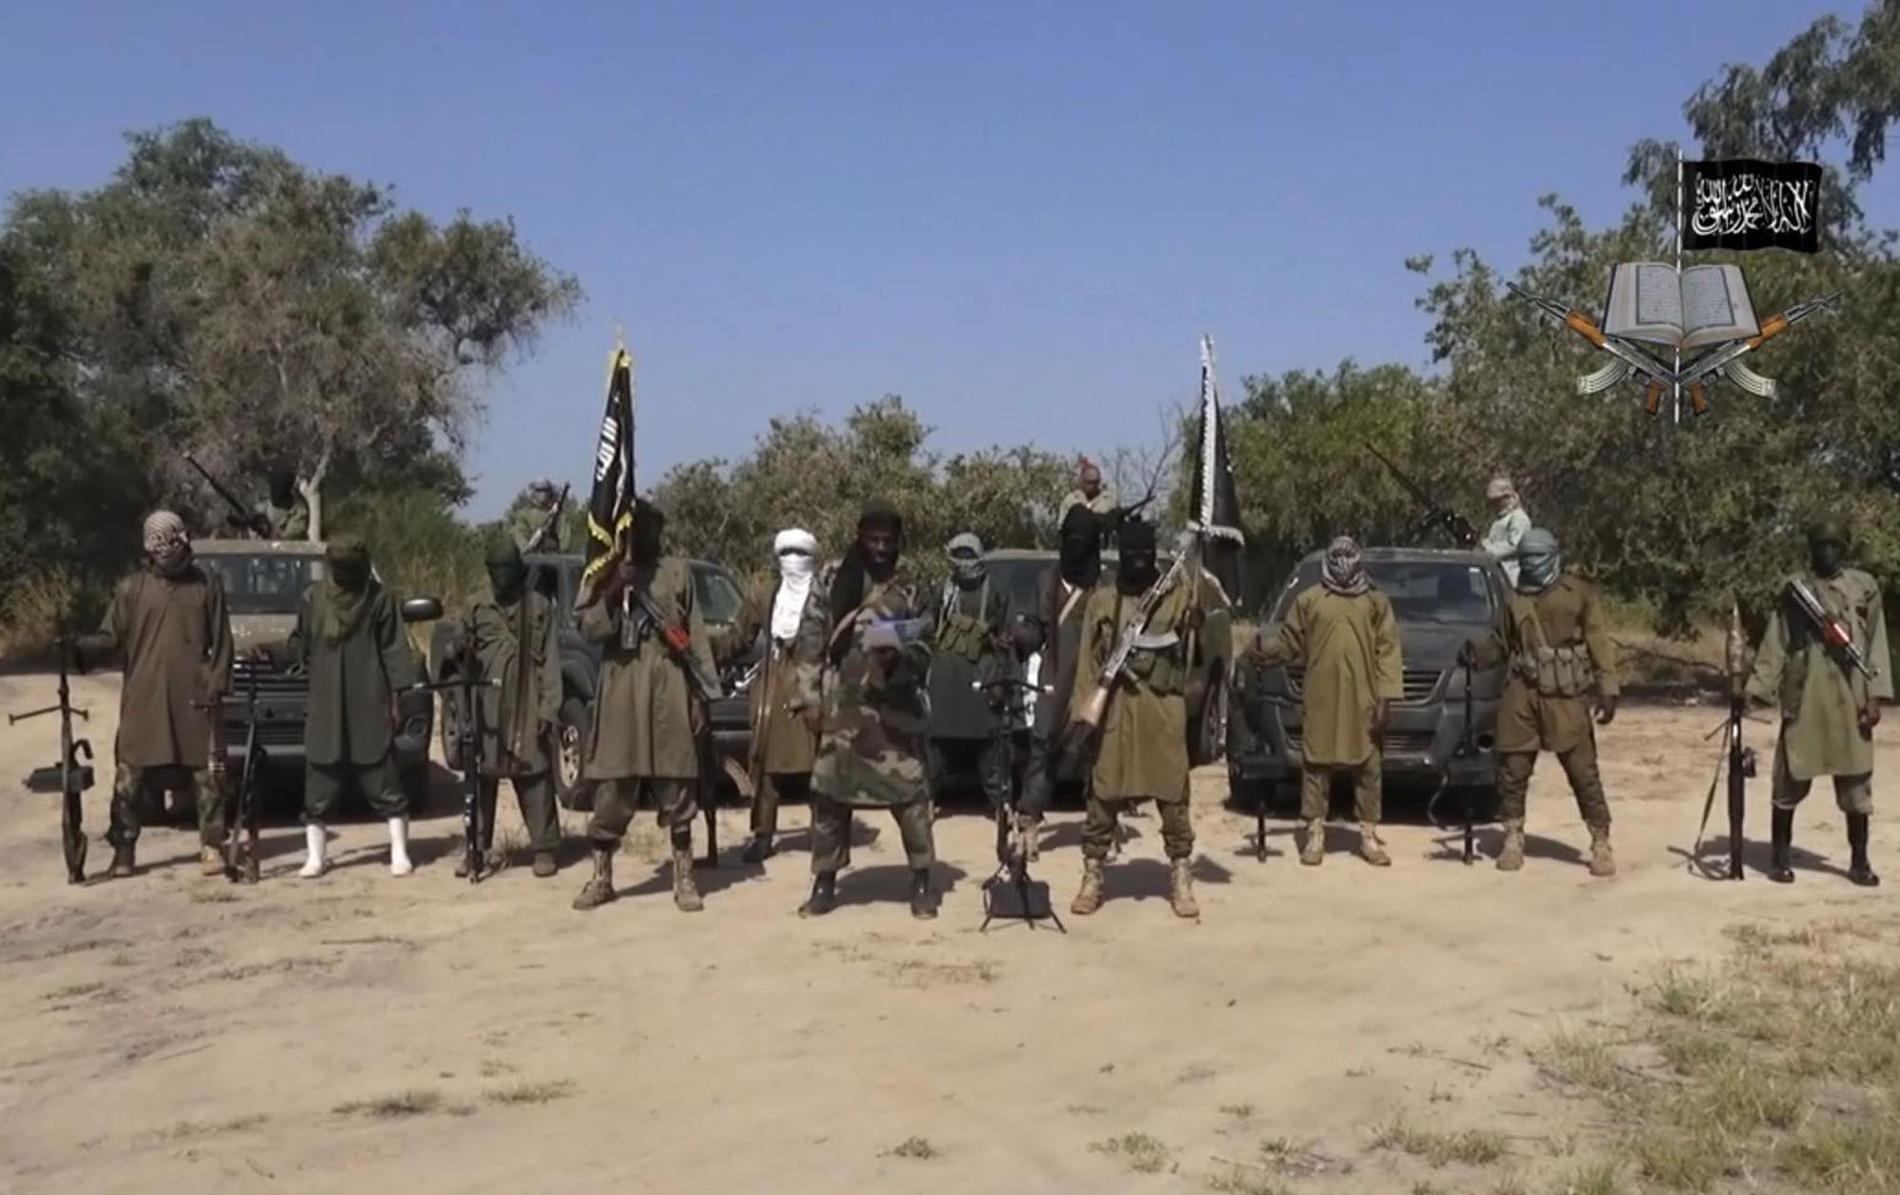 En stillbild från en video släppt av Boko Haram den 31 oktober 2014, när terrorgruppen var som starkast och konflikten som blodigast, visar ledaren Abubakar Shekau i mitten.